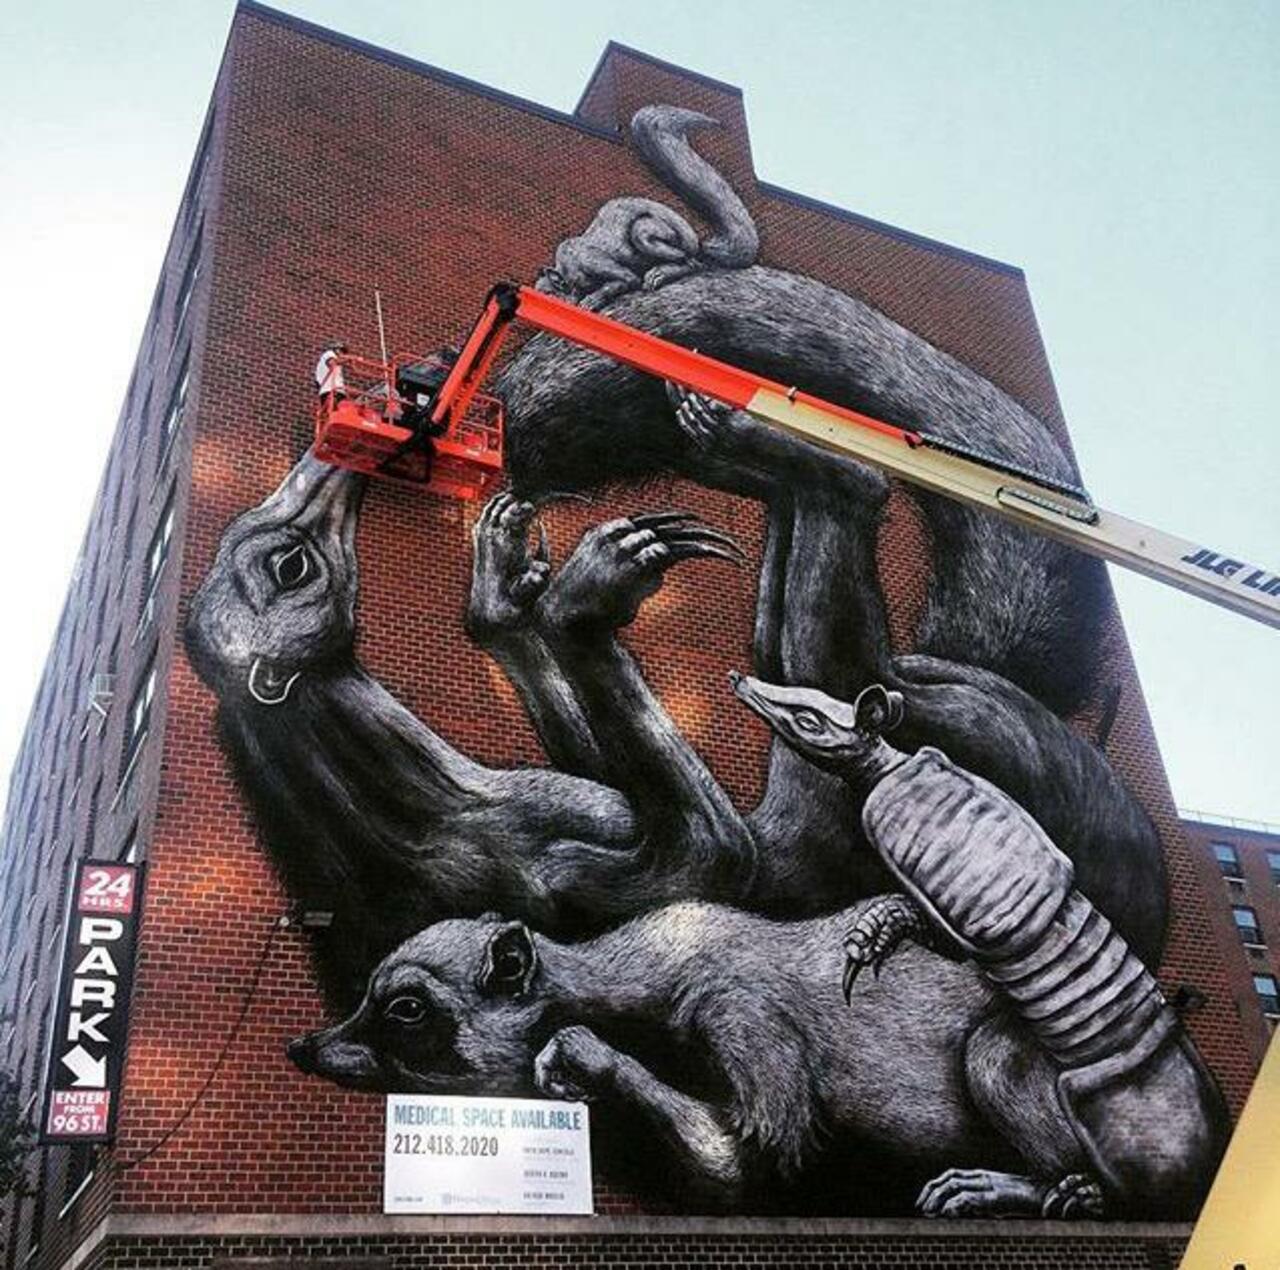 Street Art in progress by ROA in NYC

#art #graffiti #mural #streetart http://t.co/VPNUV7XvLA